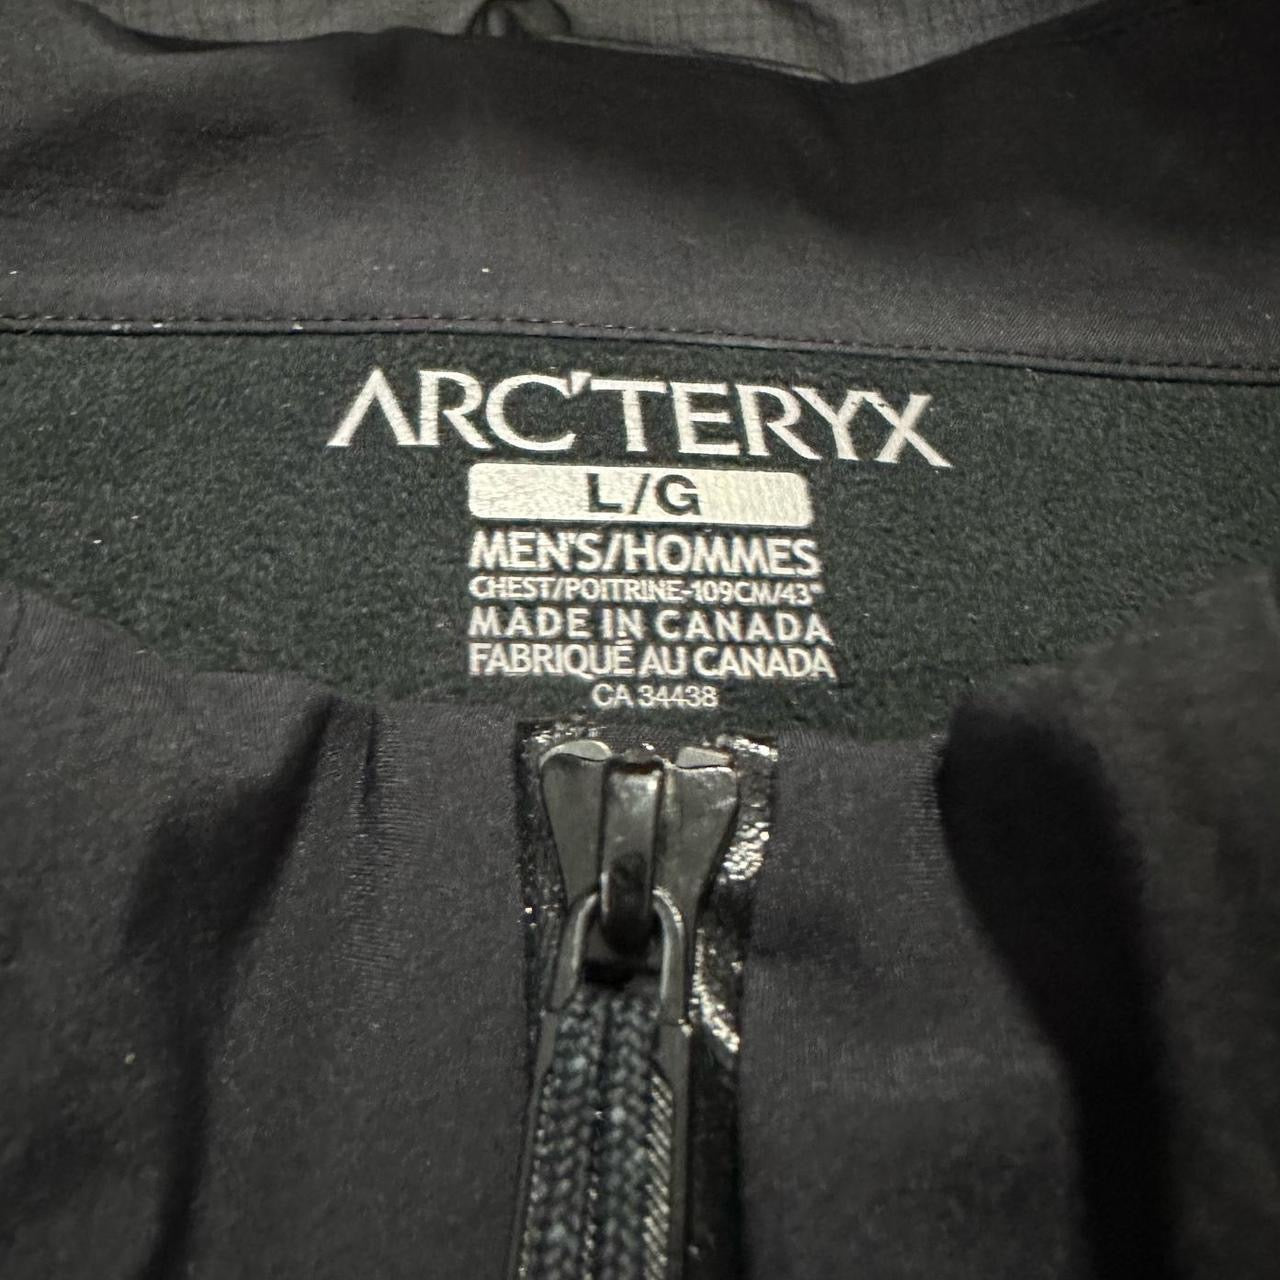 Arcteryx Leaf Pack Generation 2 Alpha LT Goretex Jacket